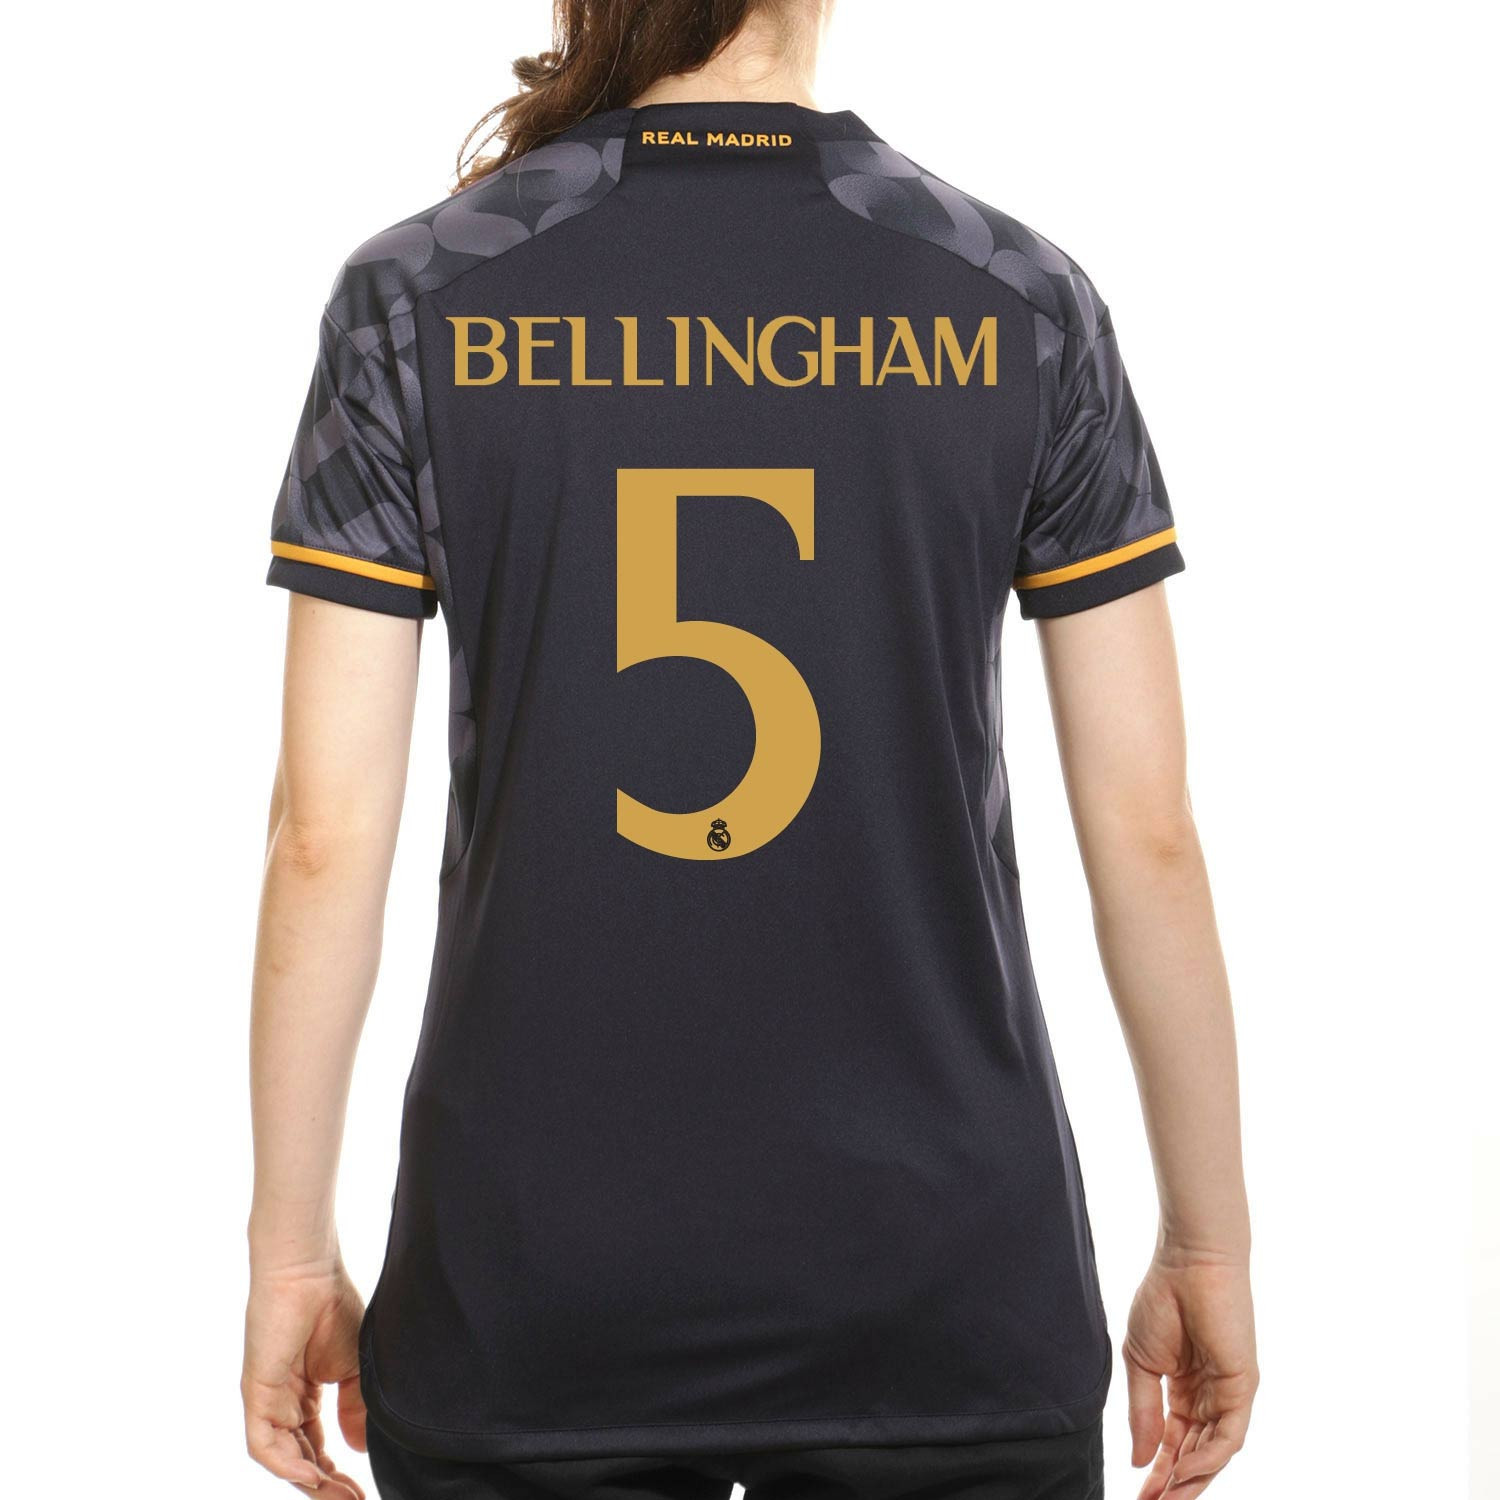 RealMadrid - Camiseta segunda equipación Real Madrid Bellingham Hombre